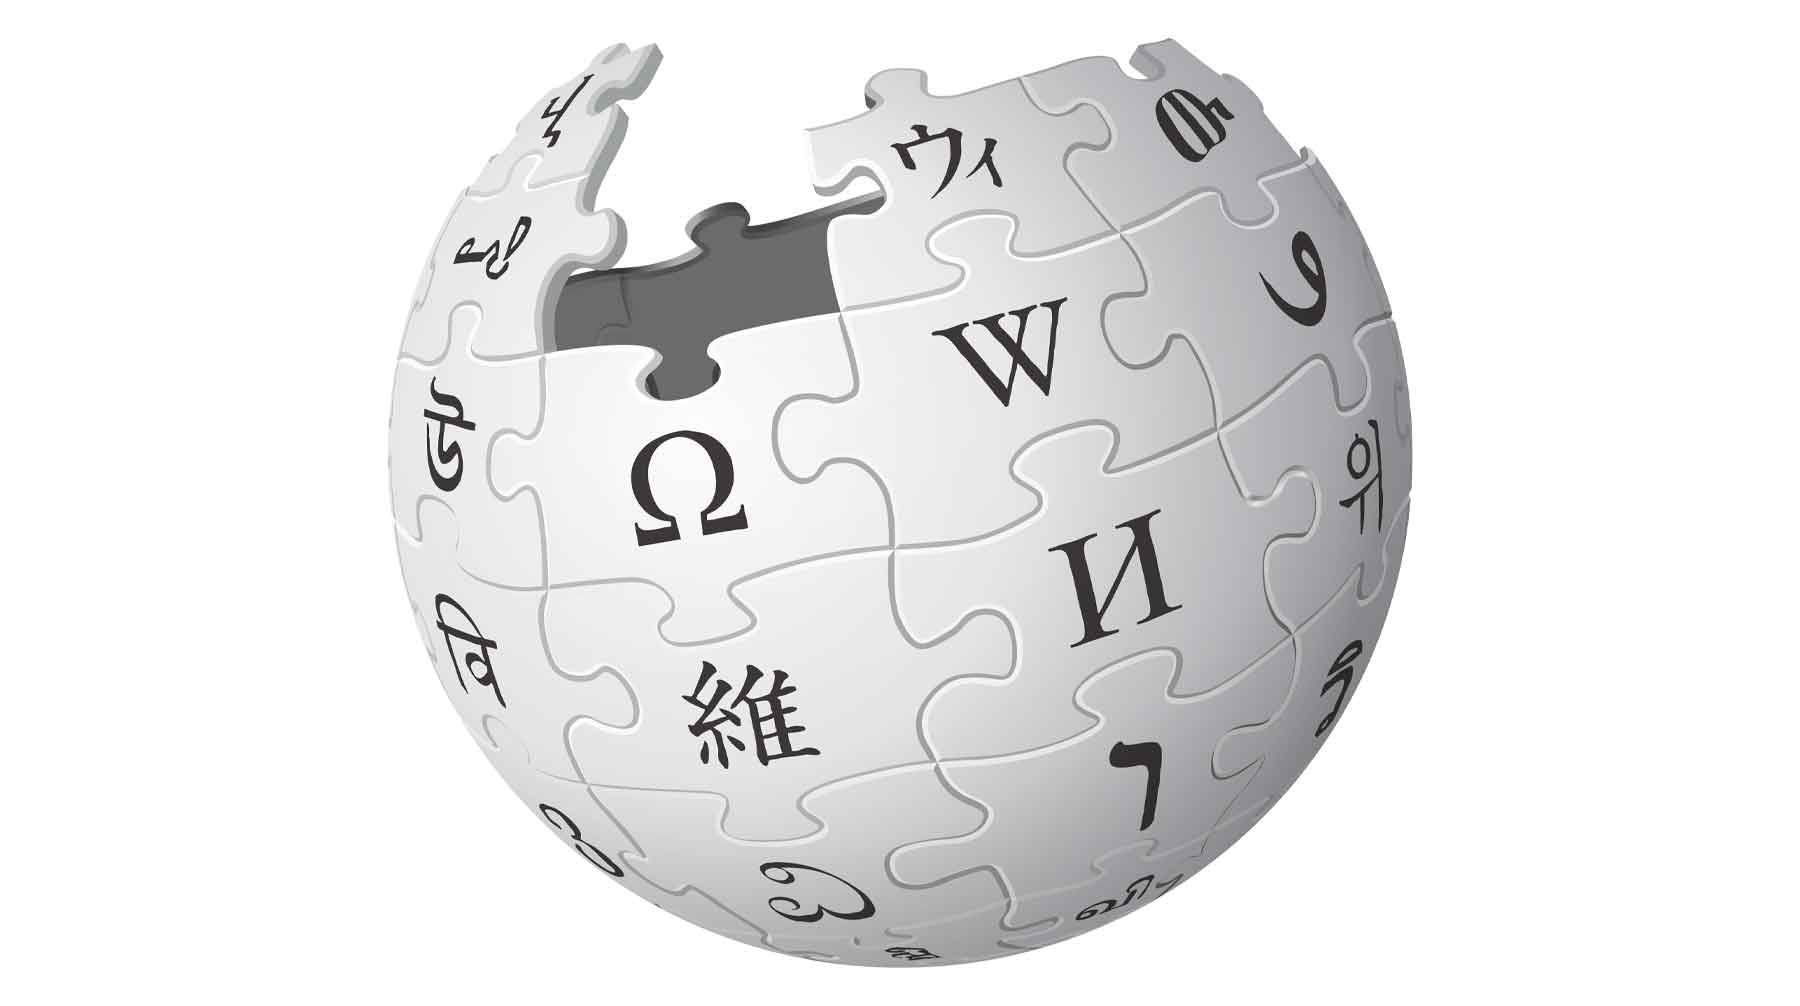 Ранее глава государства предложил пользоваться в России электронной версией Большой российской энциклопедии Википедия